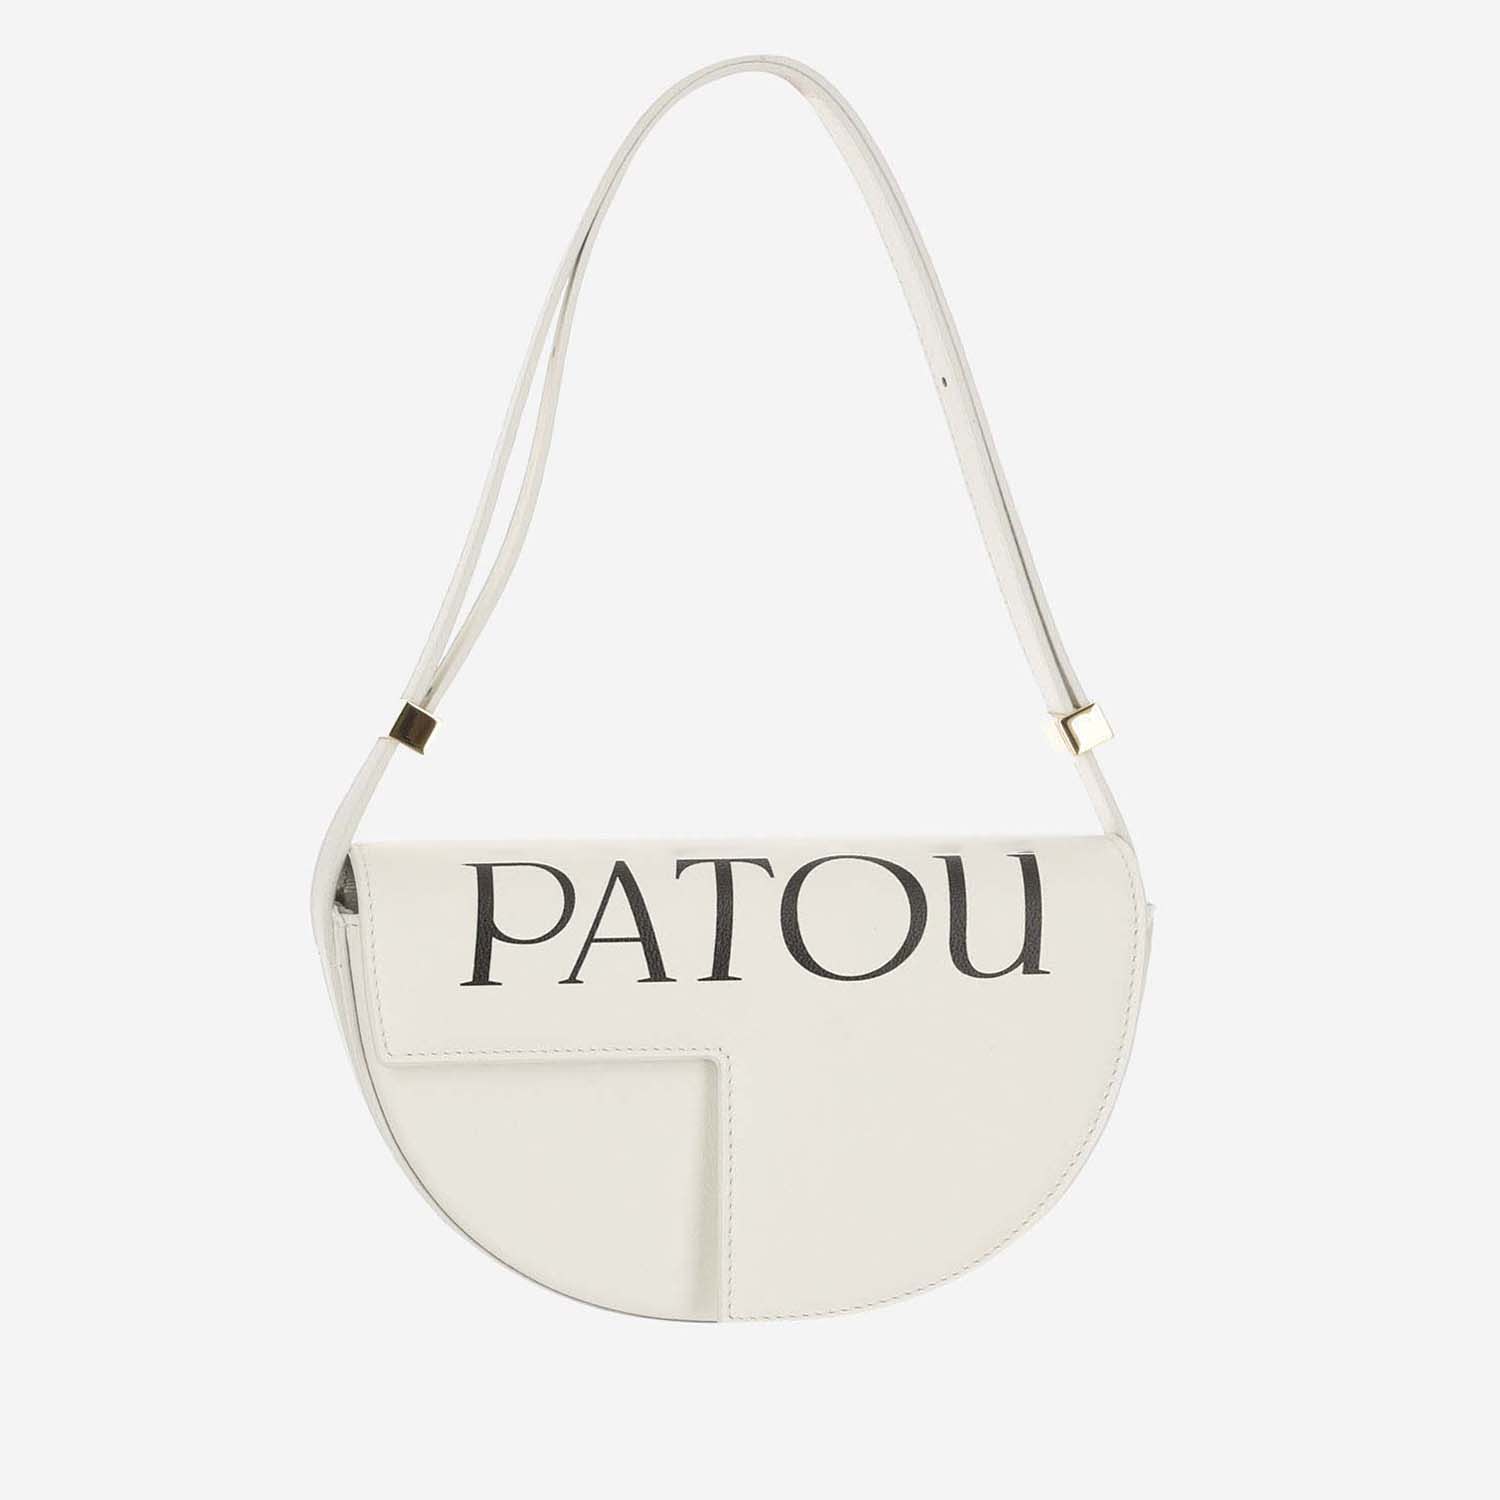 Le Petit Patou Bag